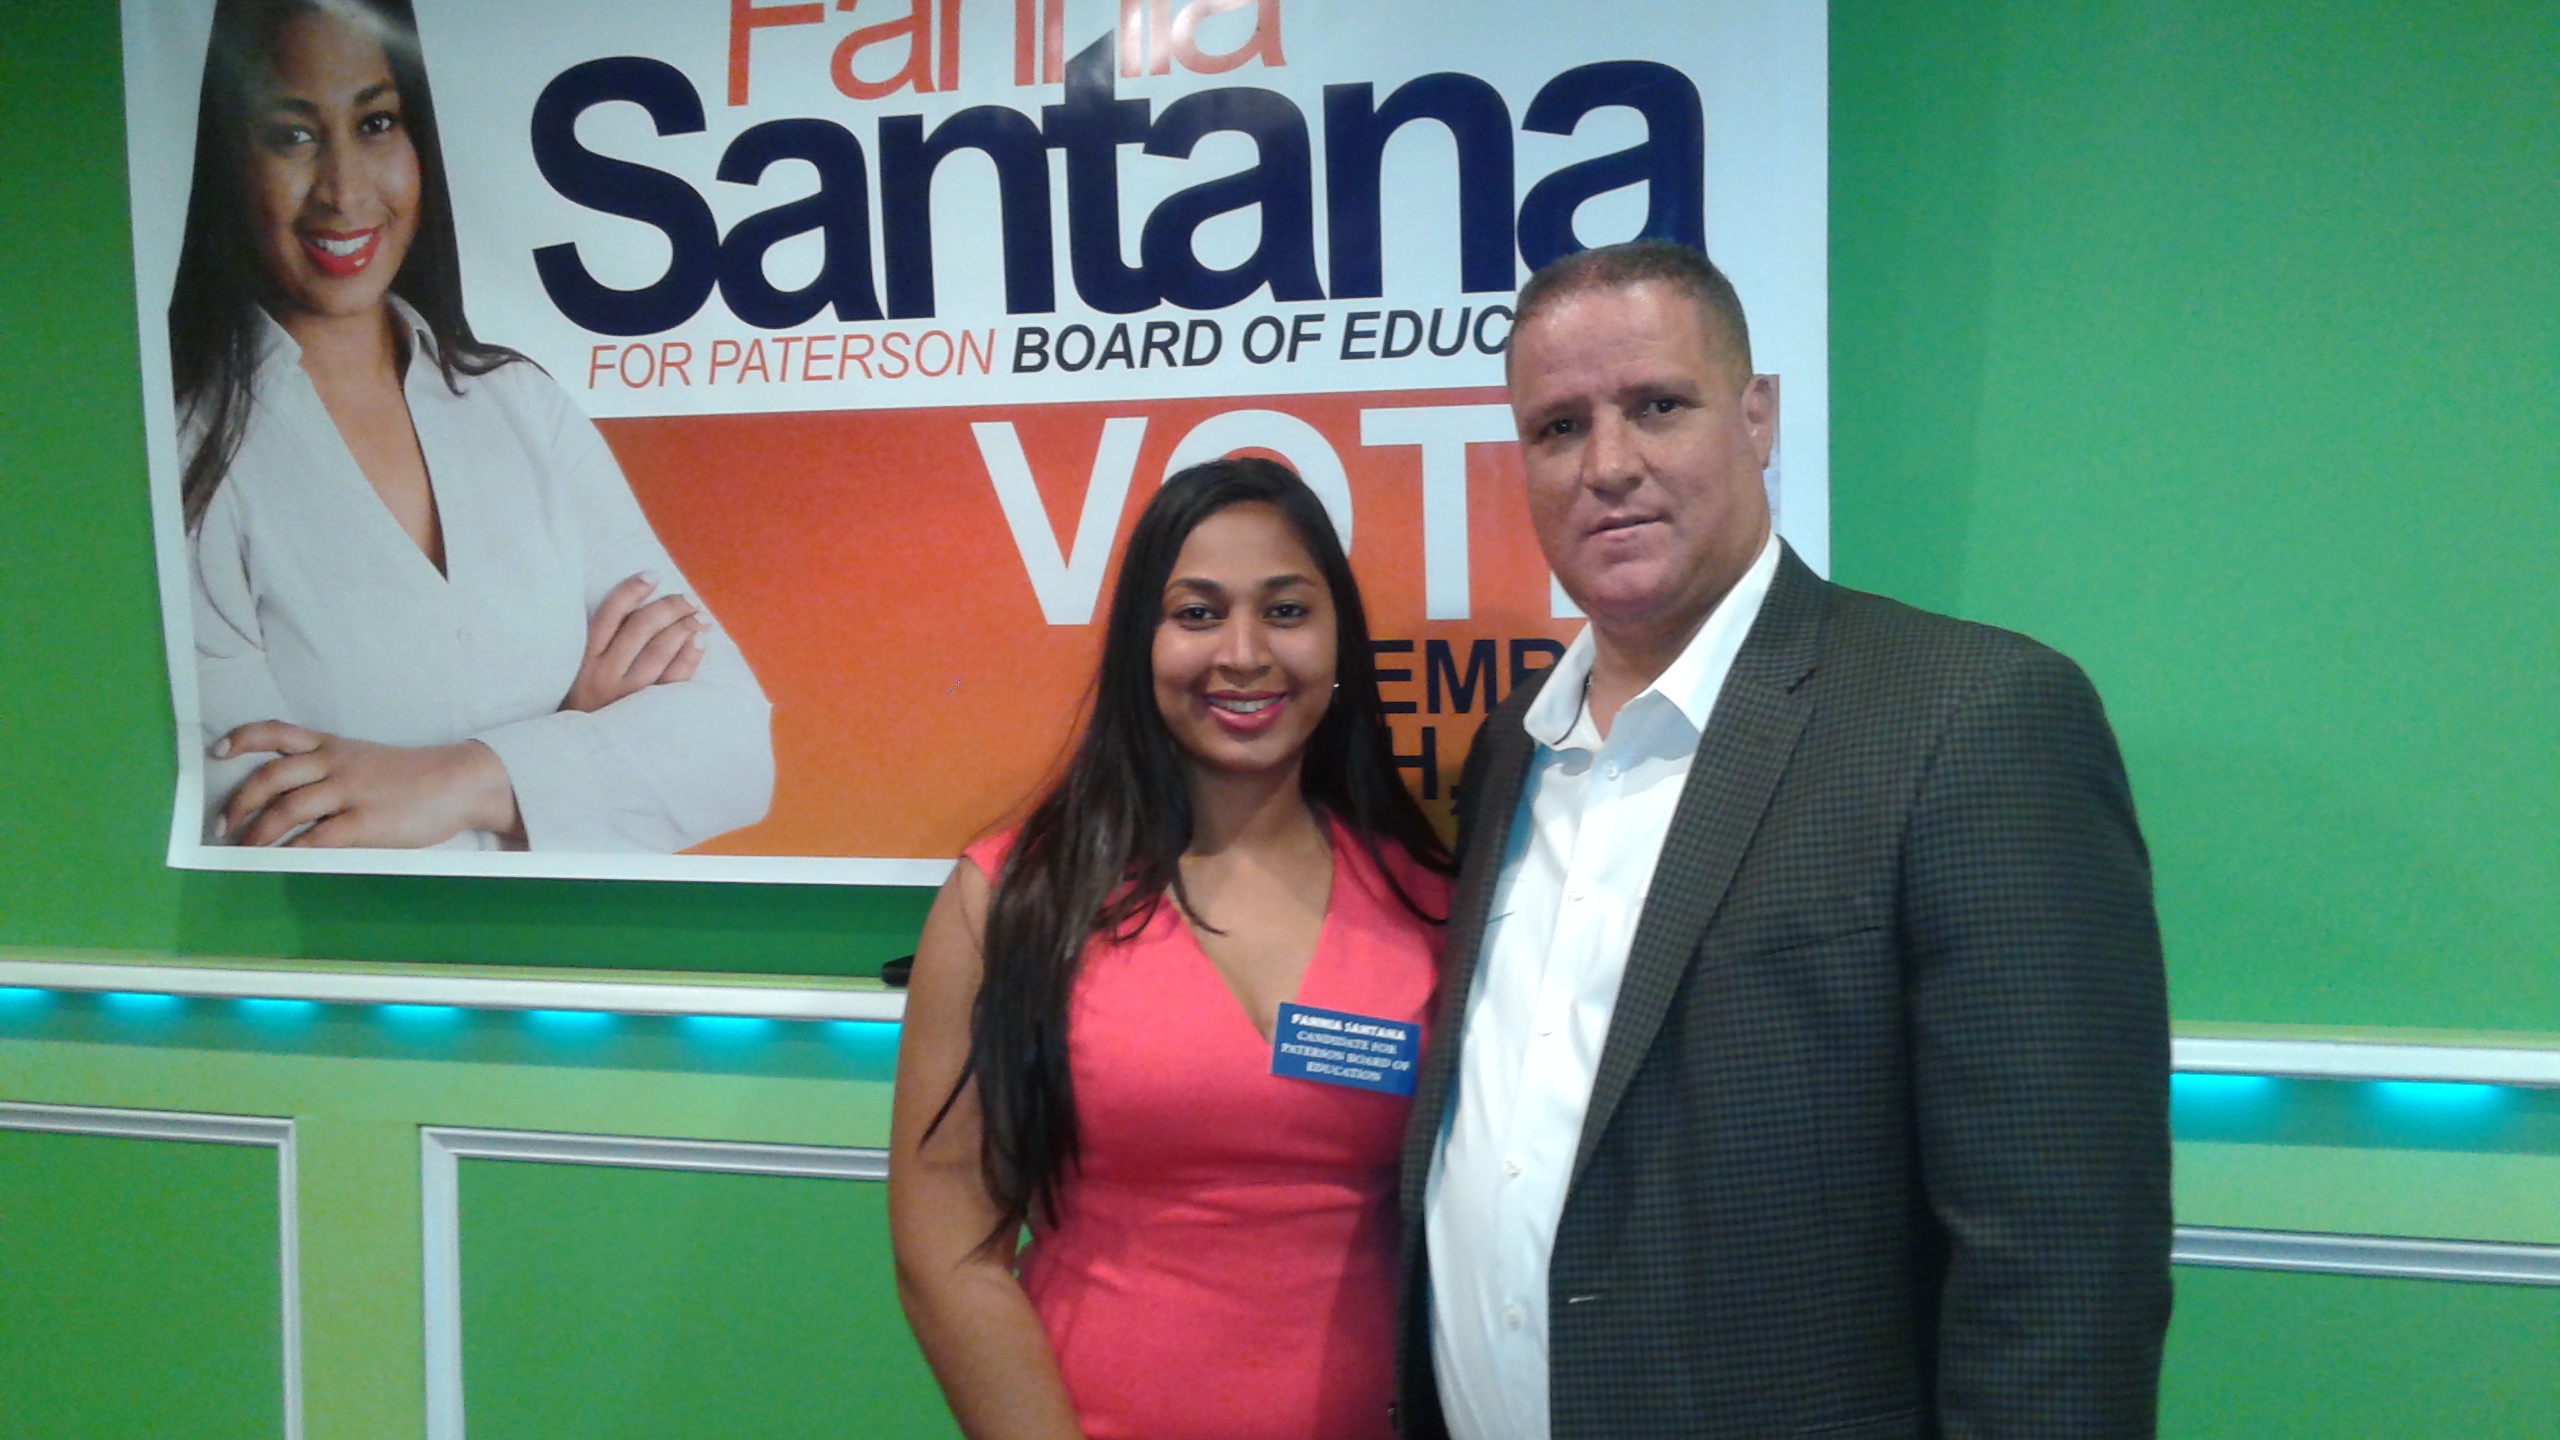  Fannia Santana apoya escuelas públicas esten bajo control ciudad de Paterson